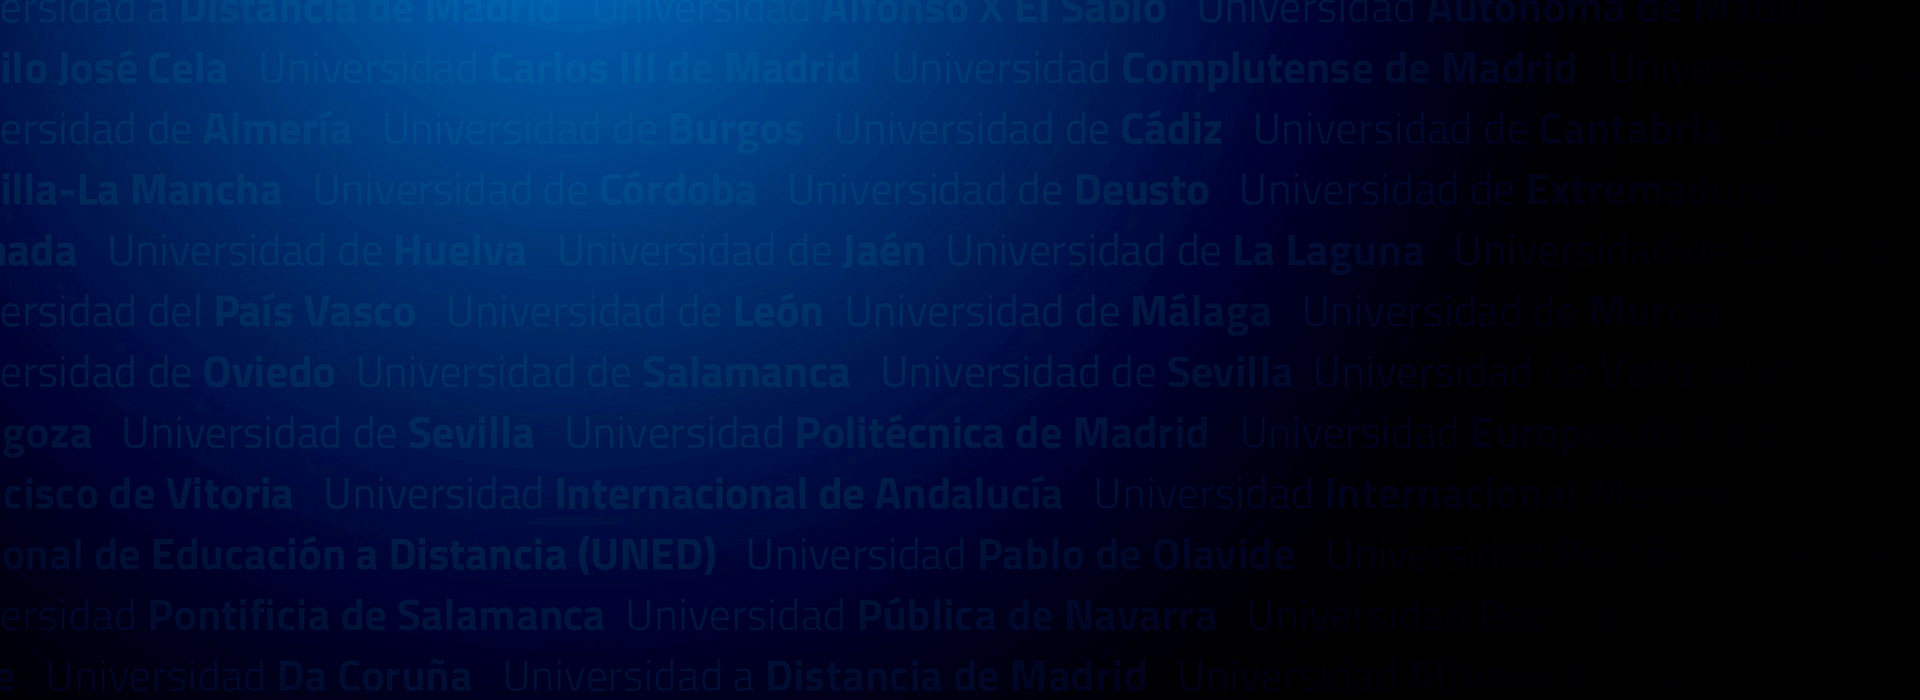 Listado de Universidades clientes de UniversitasXXI con fondo azul